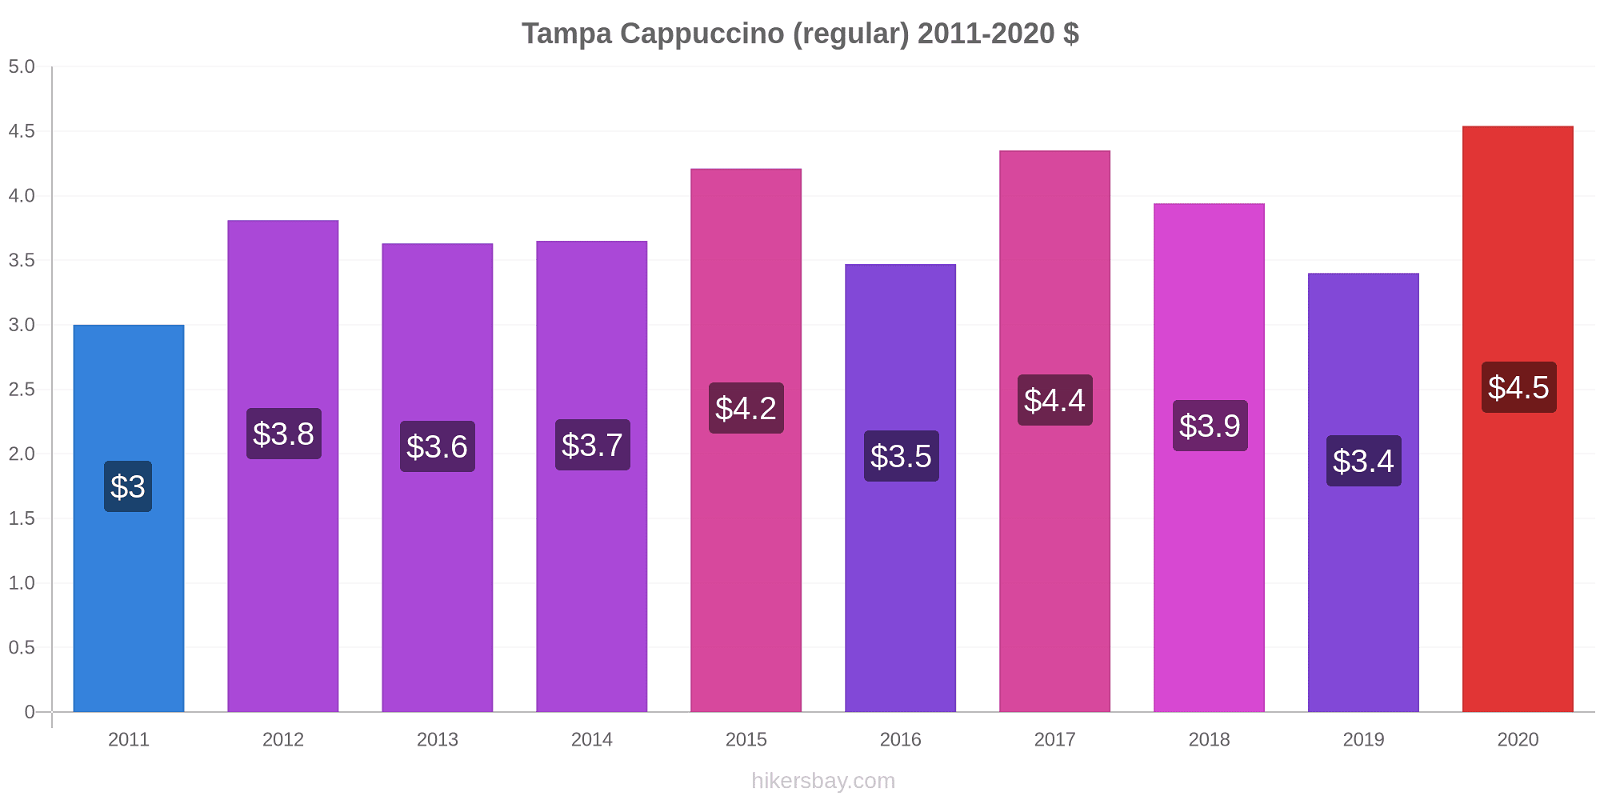 Tampa variação de preço Capuccino (regular) hikersbay.com